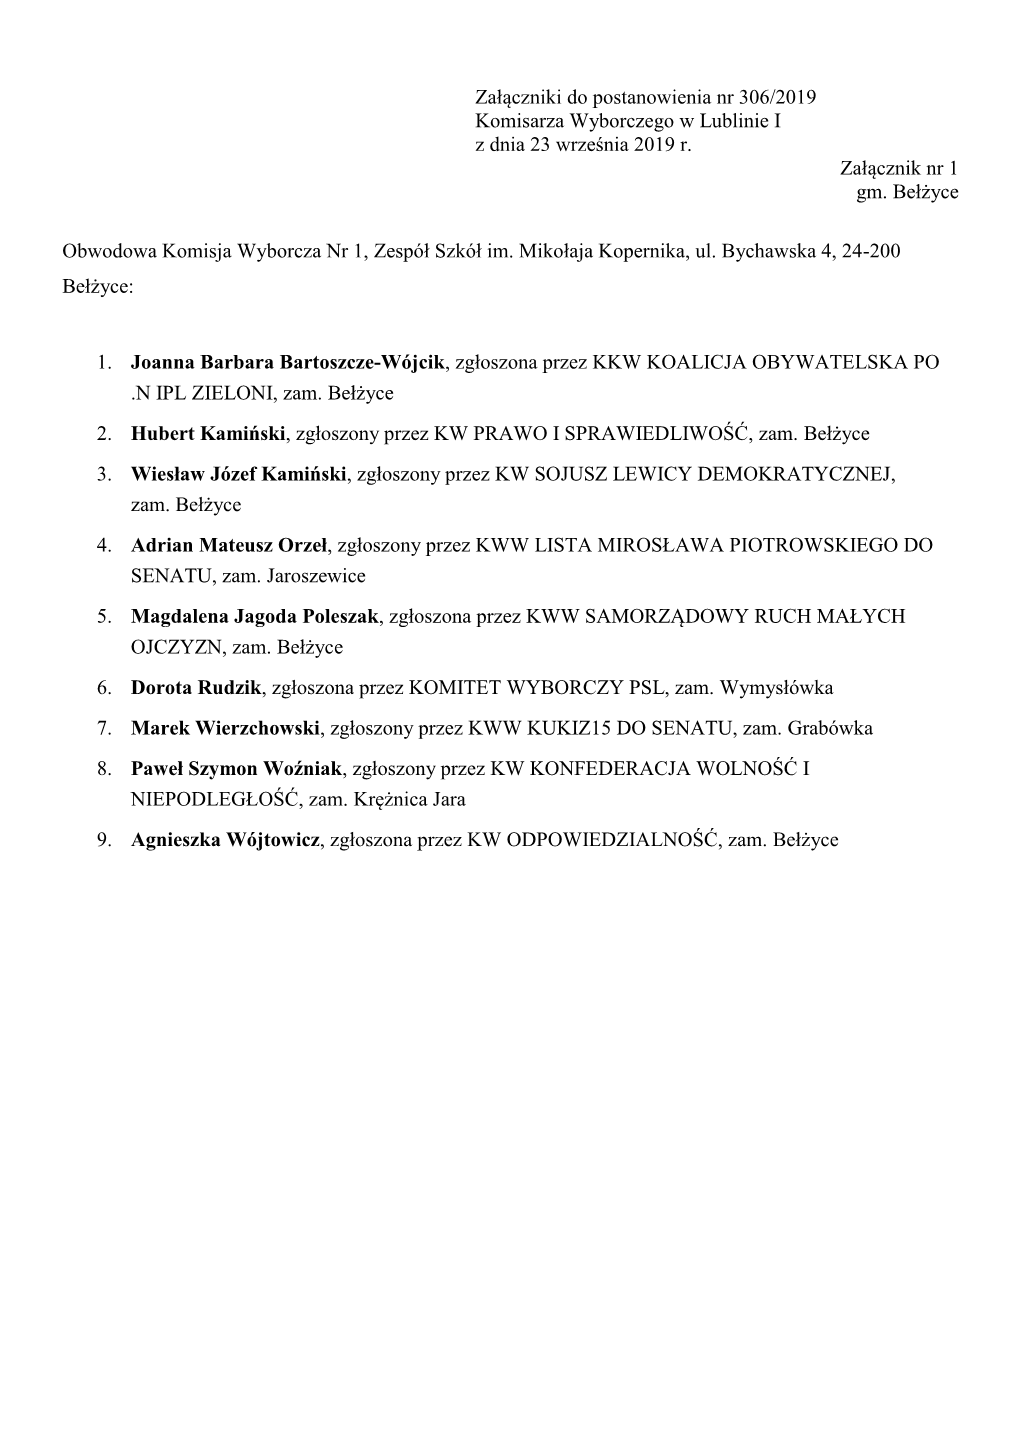 Załączniki Do Postanowienia Nr 306/2019 Komisarza Wyborczego W Lublinie I Z Dnia 23 Września 2019 R